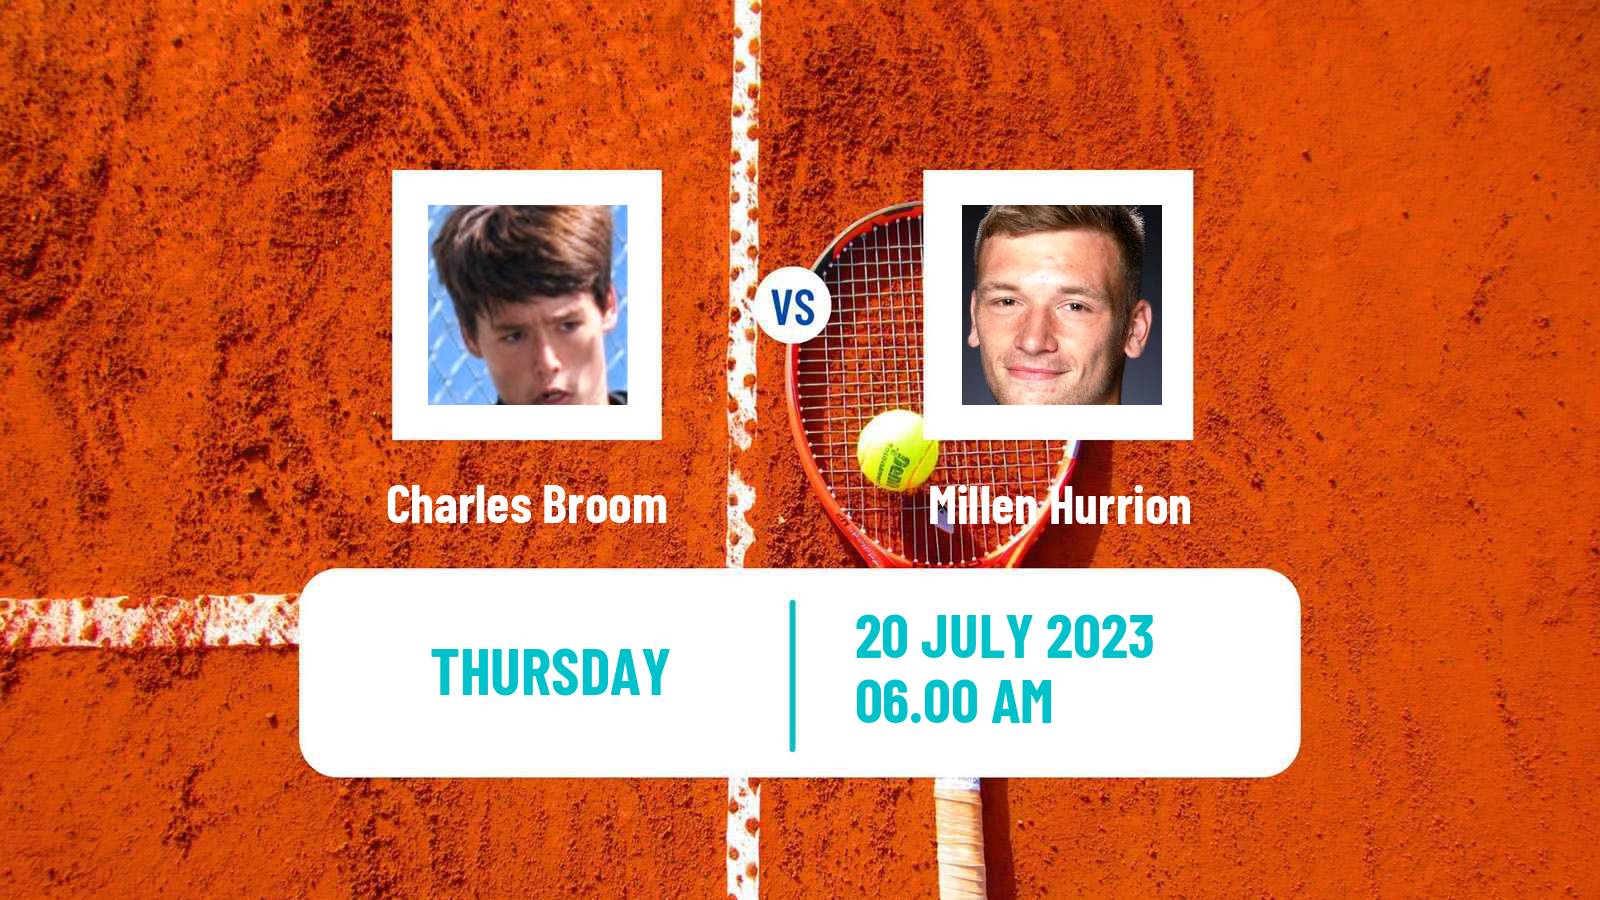 Tennis ITF M25 Roehampton Men Charles Broom - Millen Hurrion